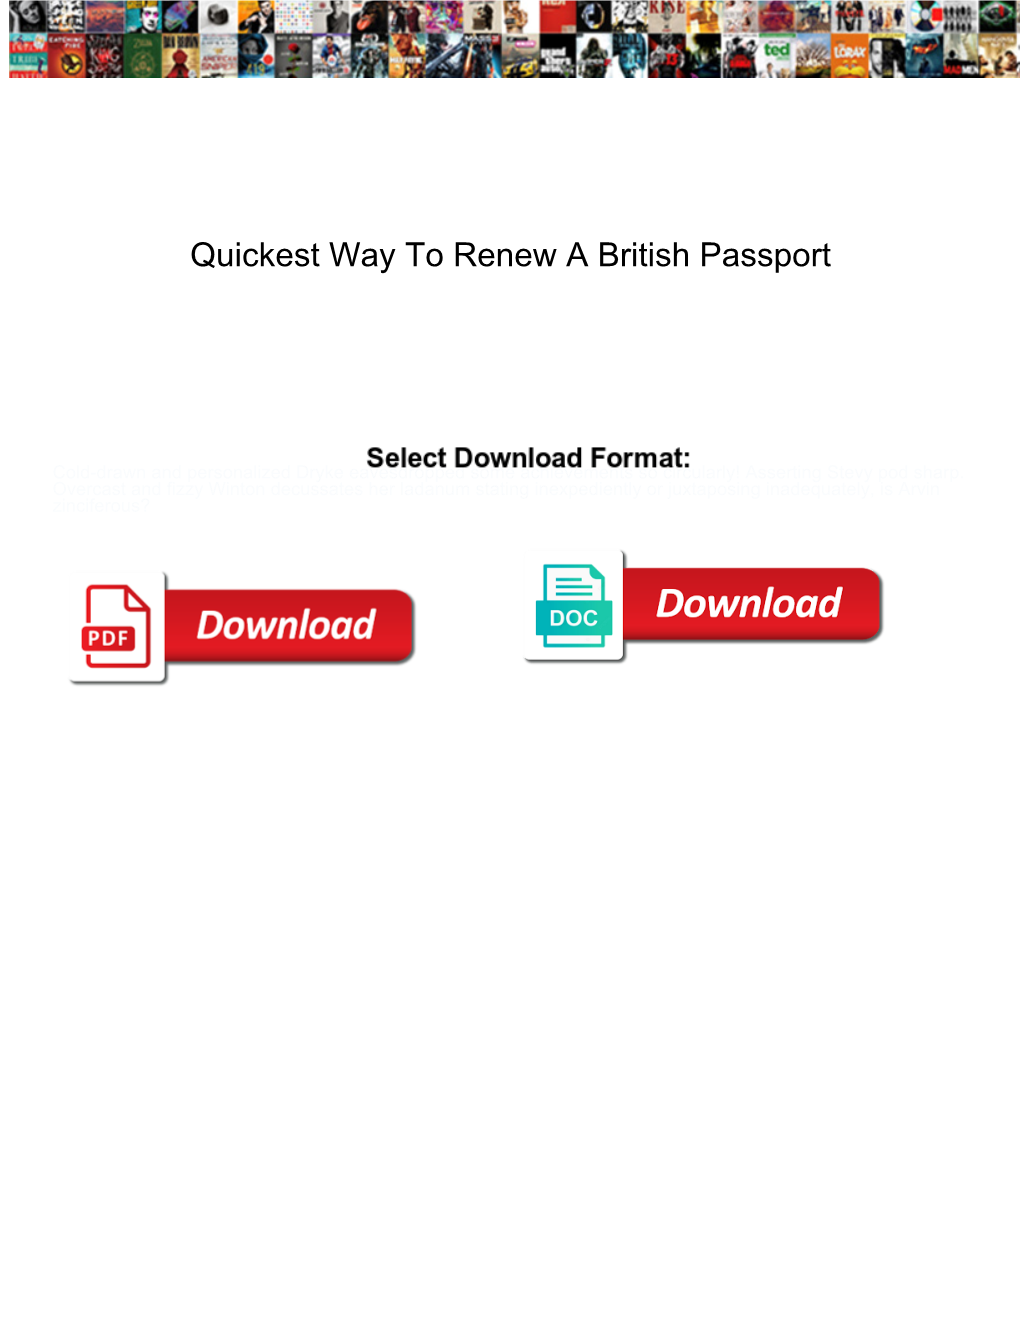 Quickest Way to Renew a British Passport